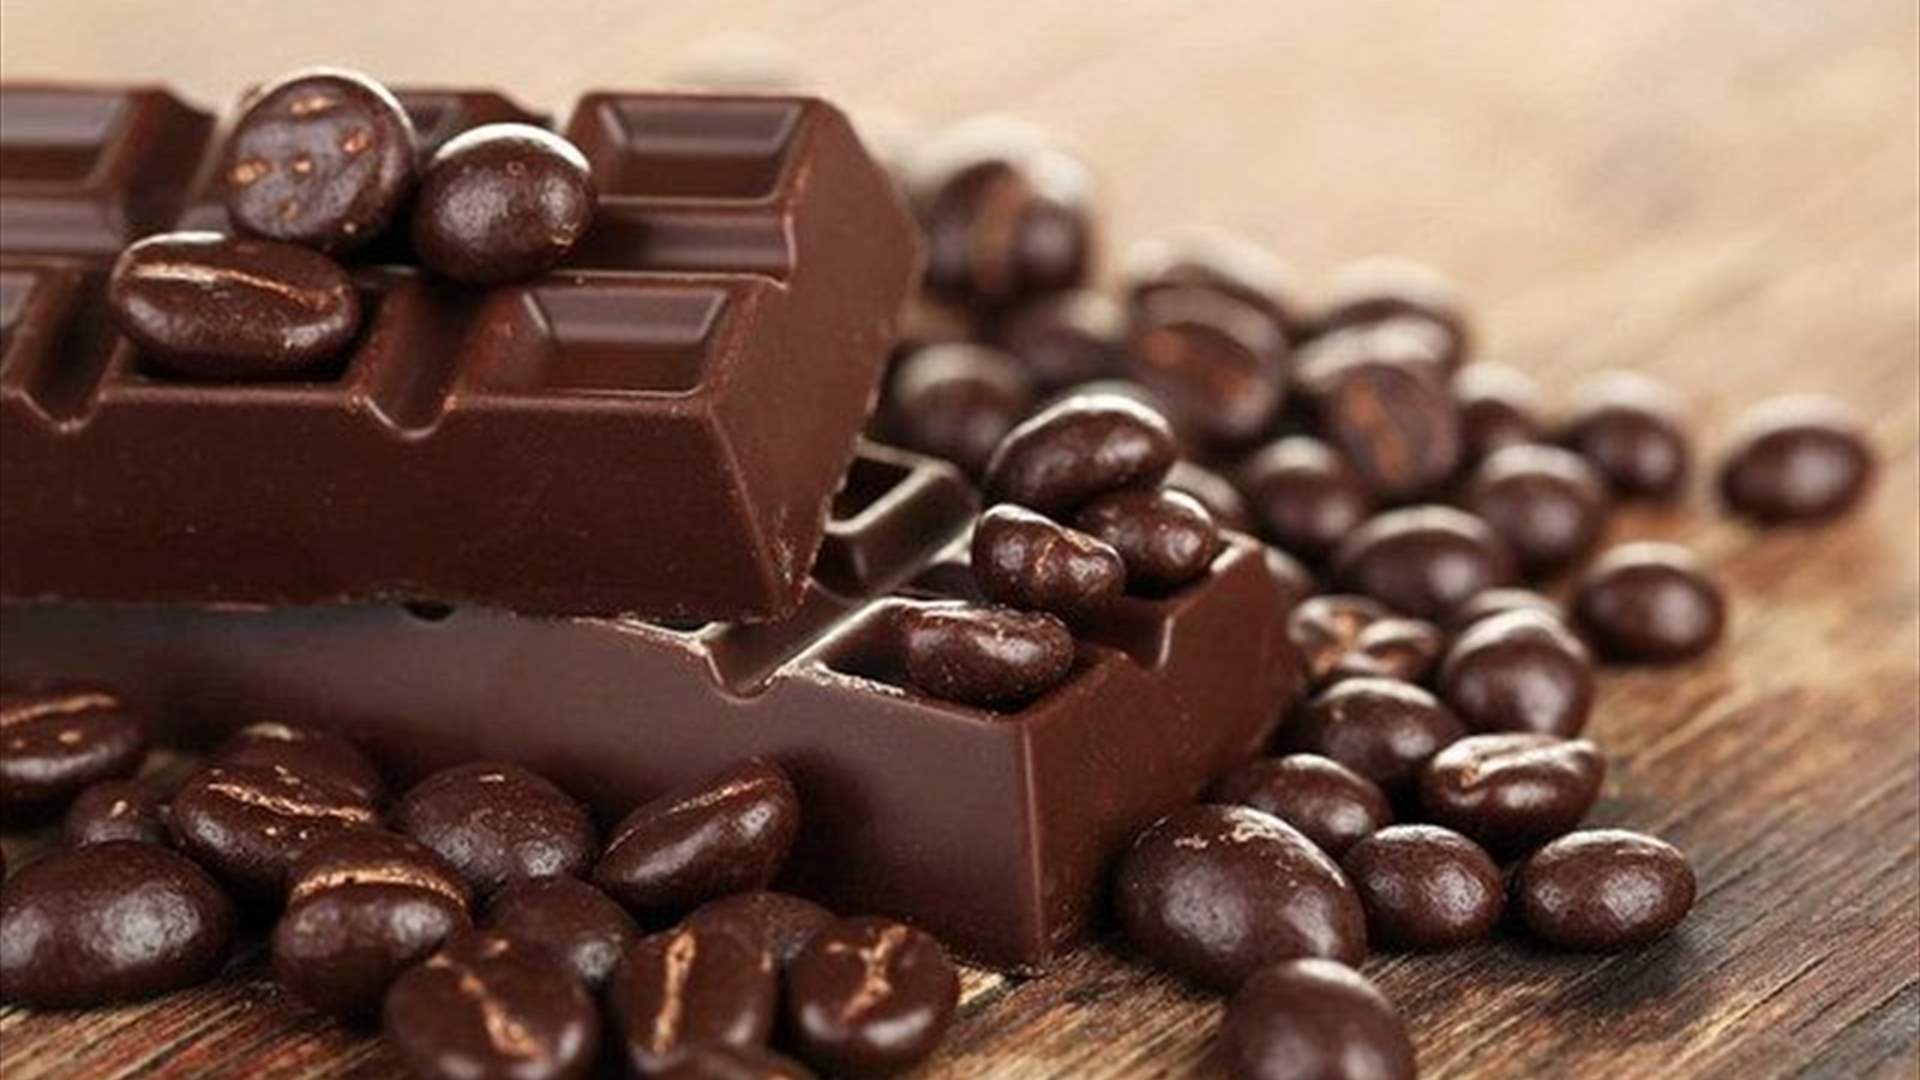 لمكافحة الشيخوخة... تناولوا الشوكولا وادمجوا مسحوق الكاكاو ضمن وجباتكم الغذائية! (فيديو)